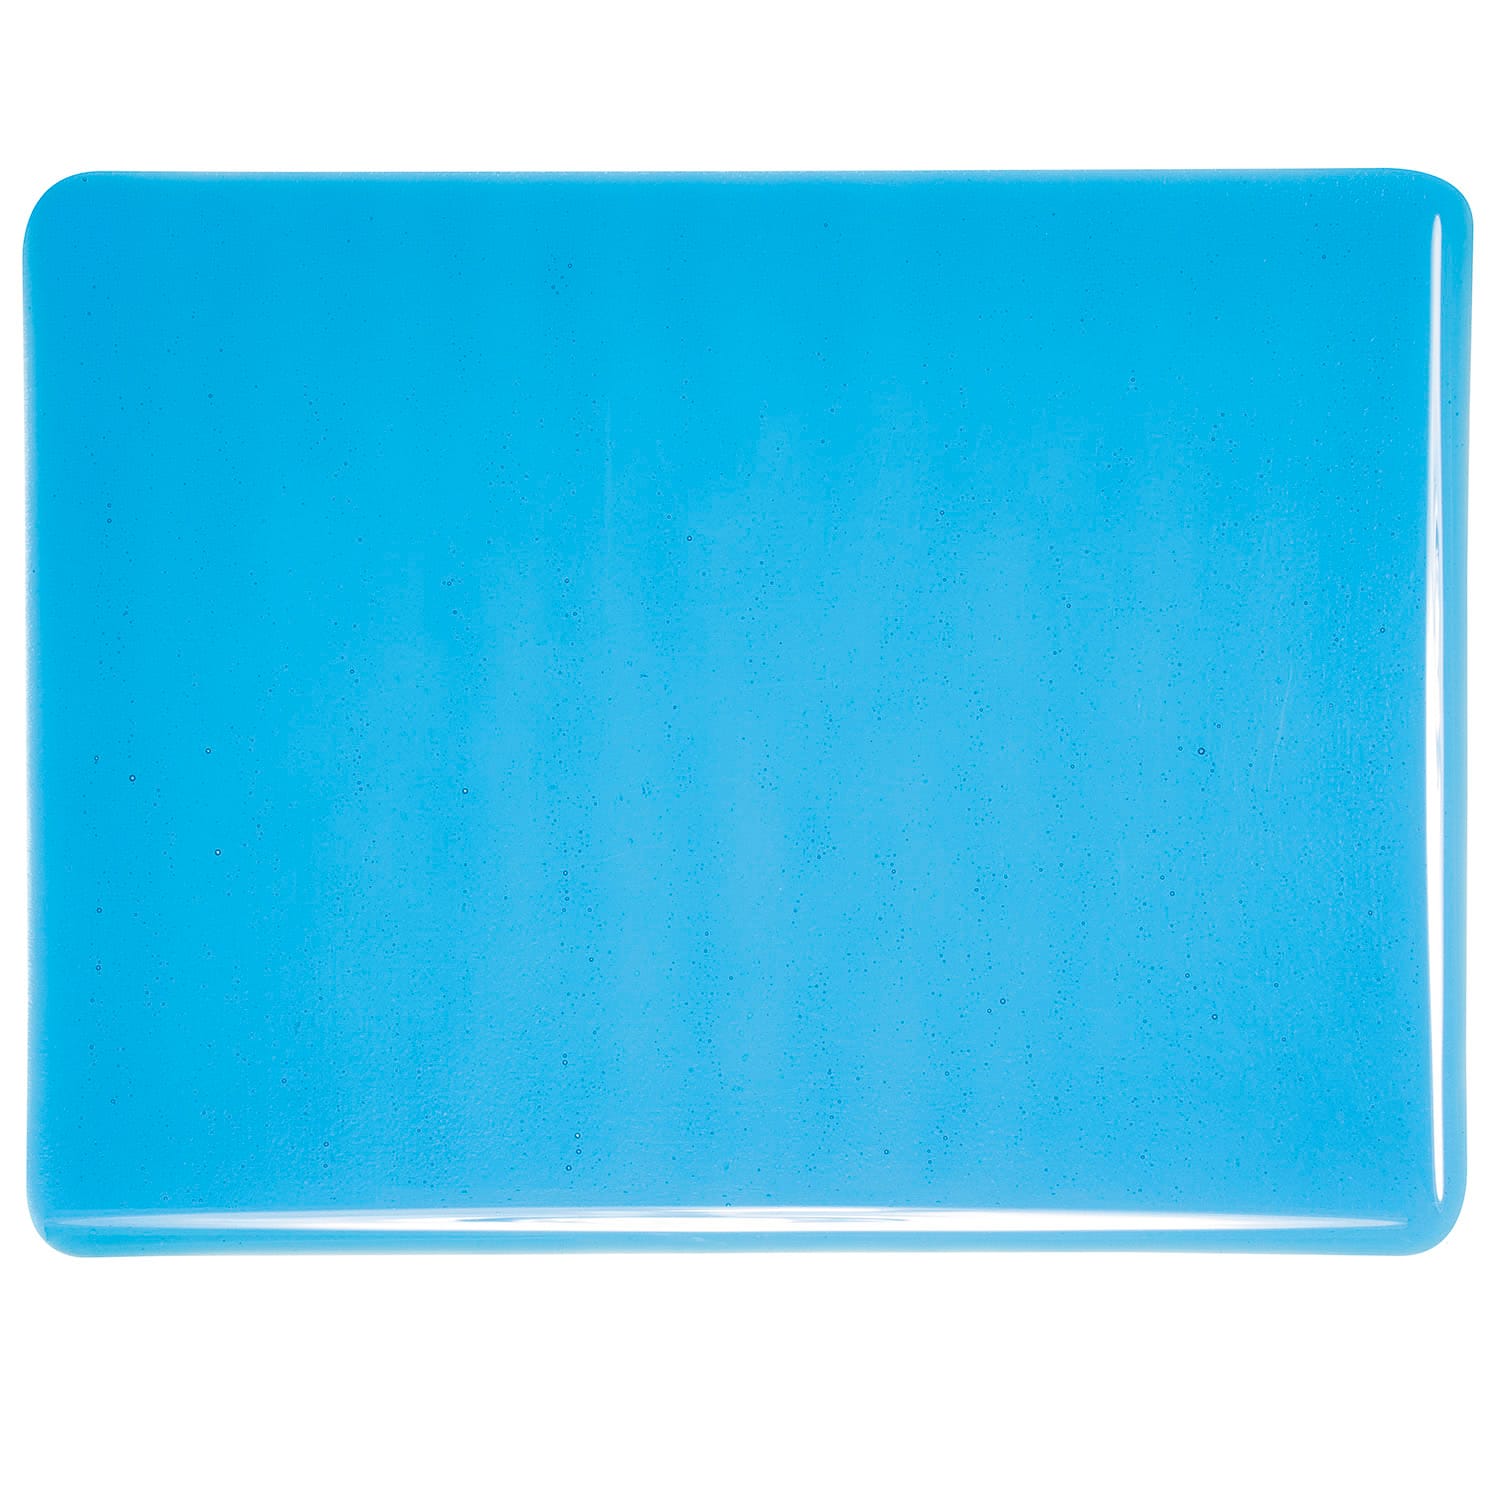 Bullseye COE90 Fusing Glass 001116 Turquoise Blue Full Sheet